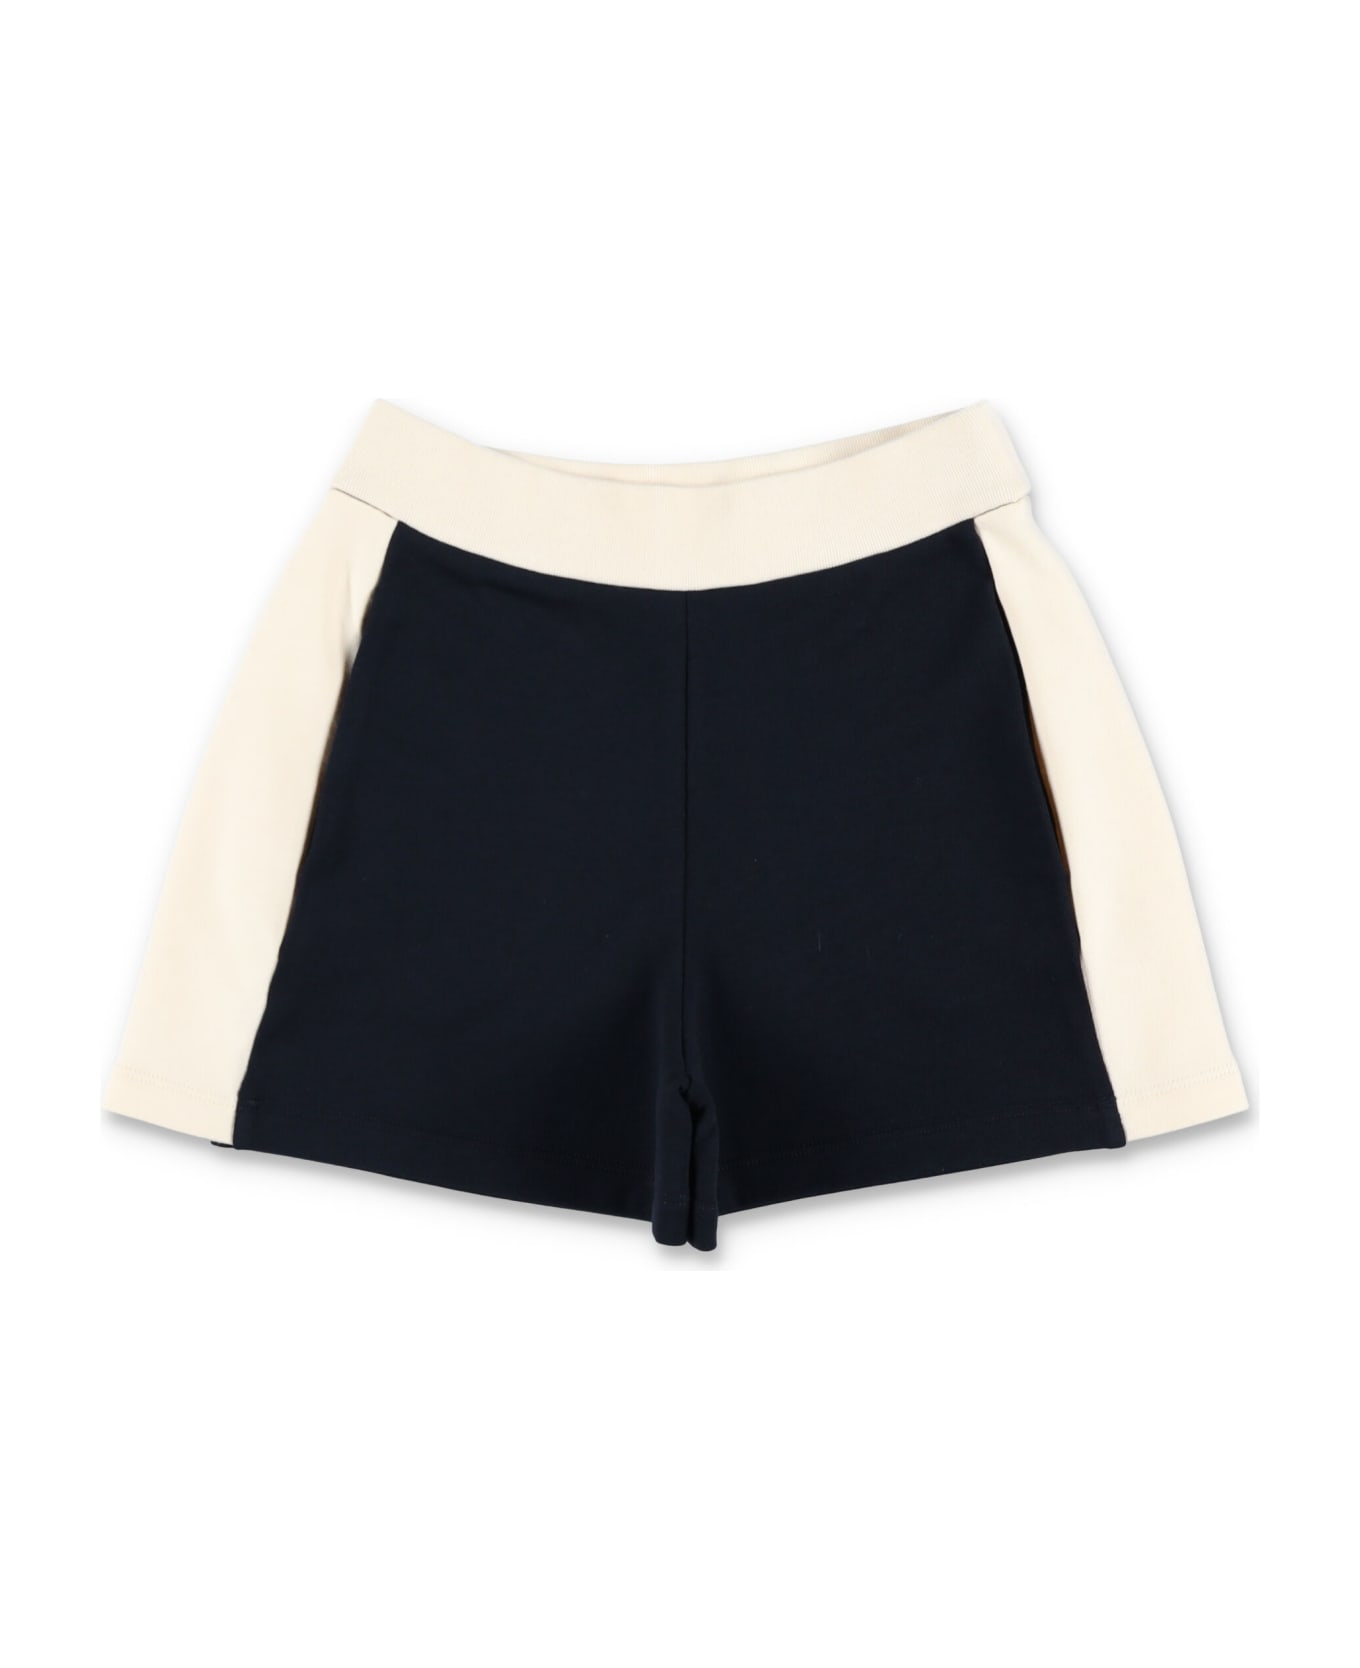 Moncler Set Fleece + Pants - BLACK/WHITE